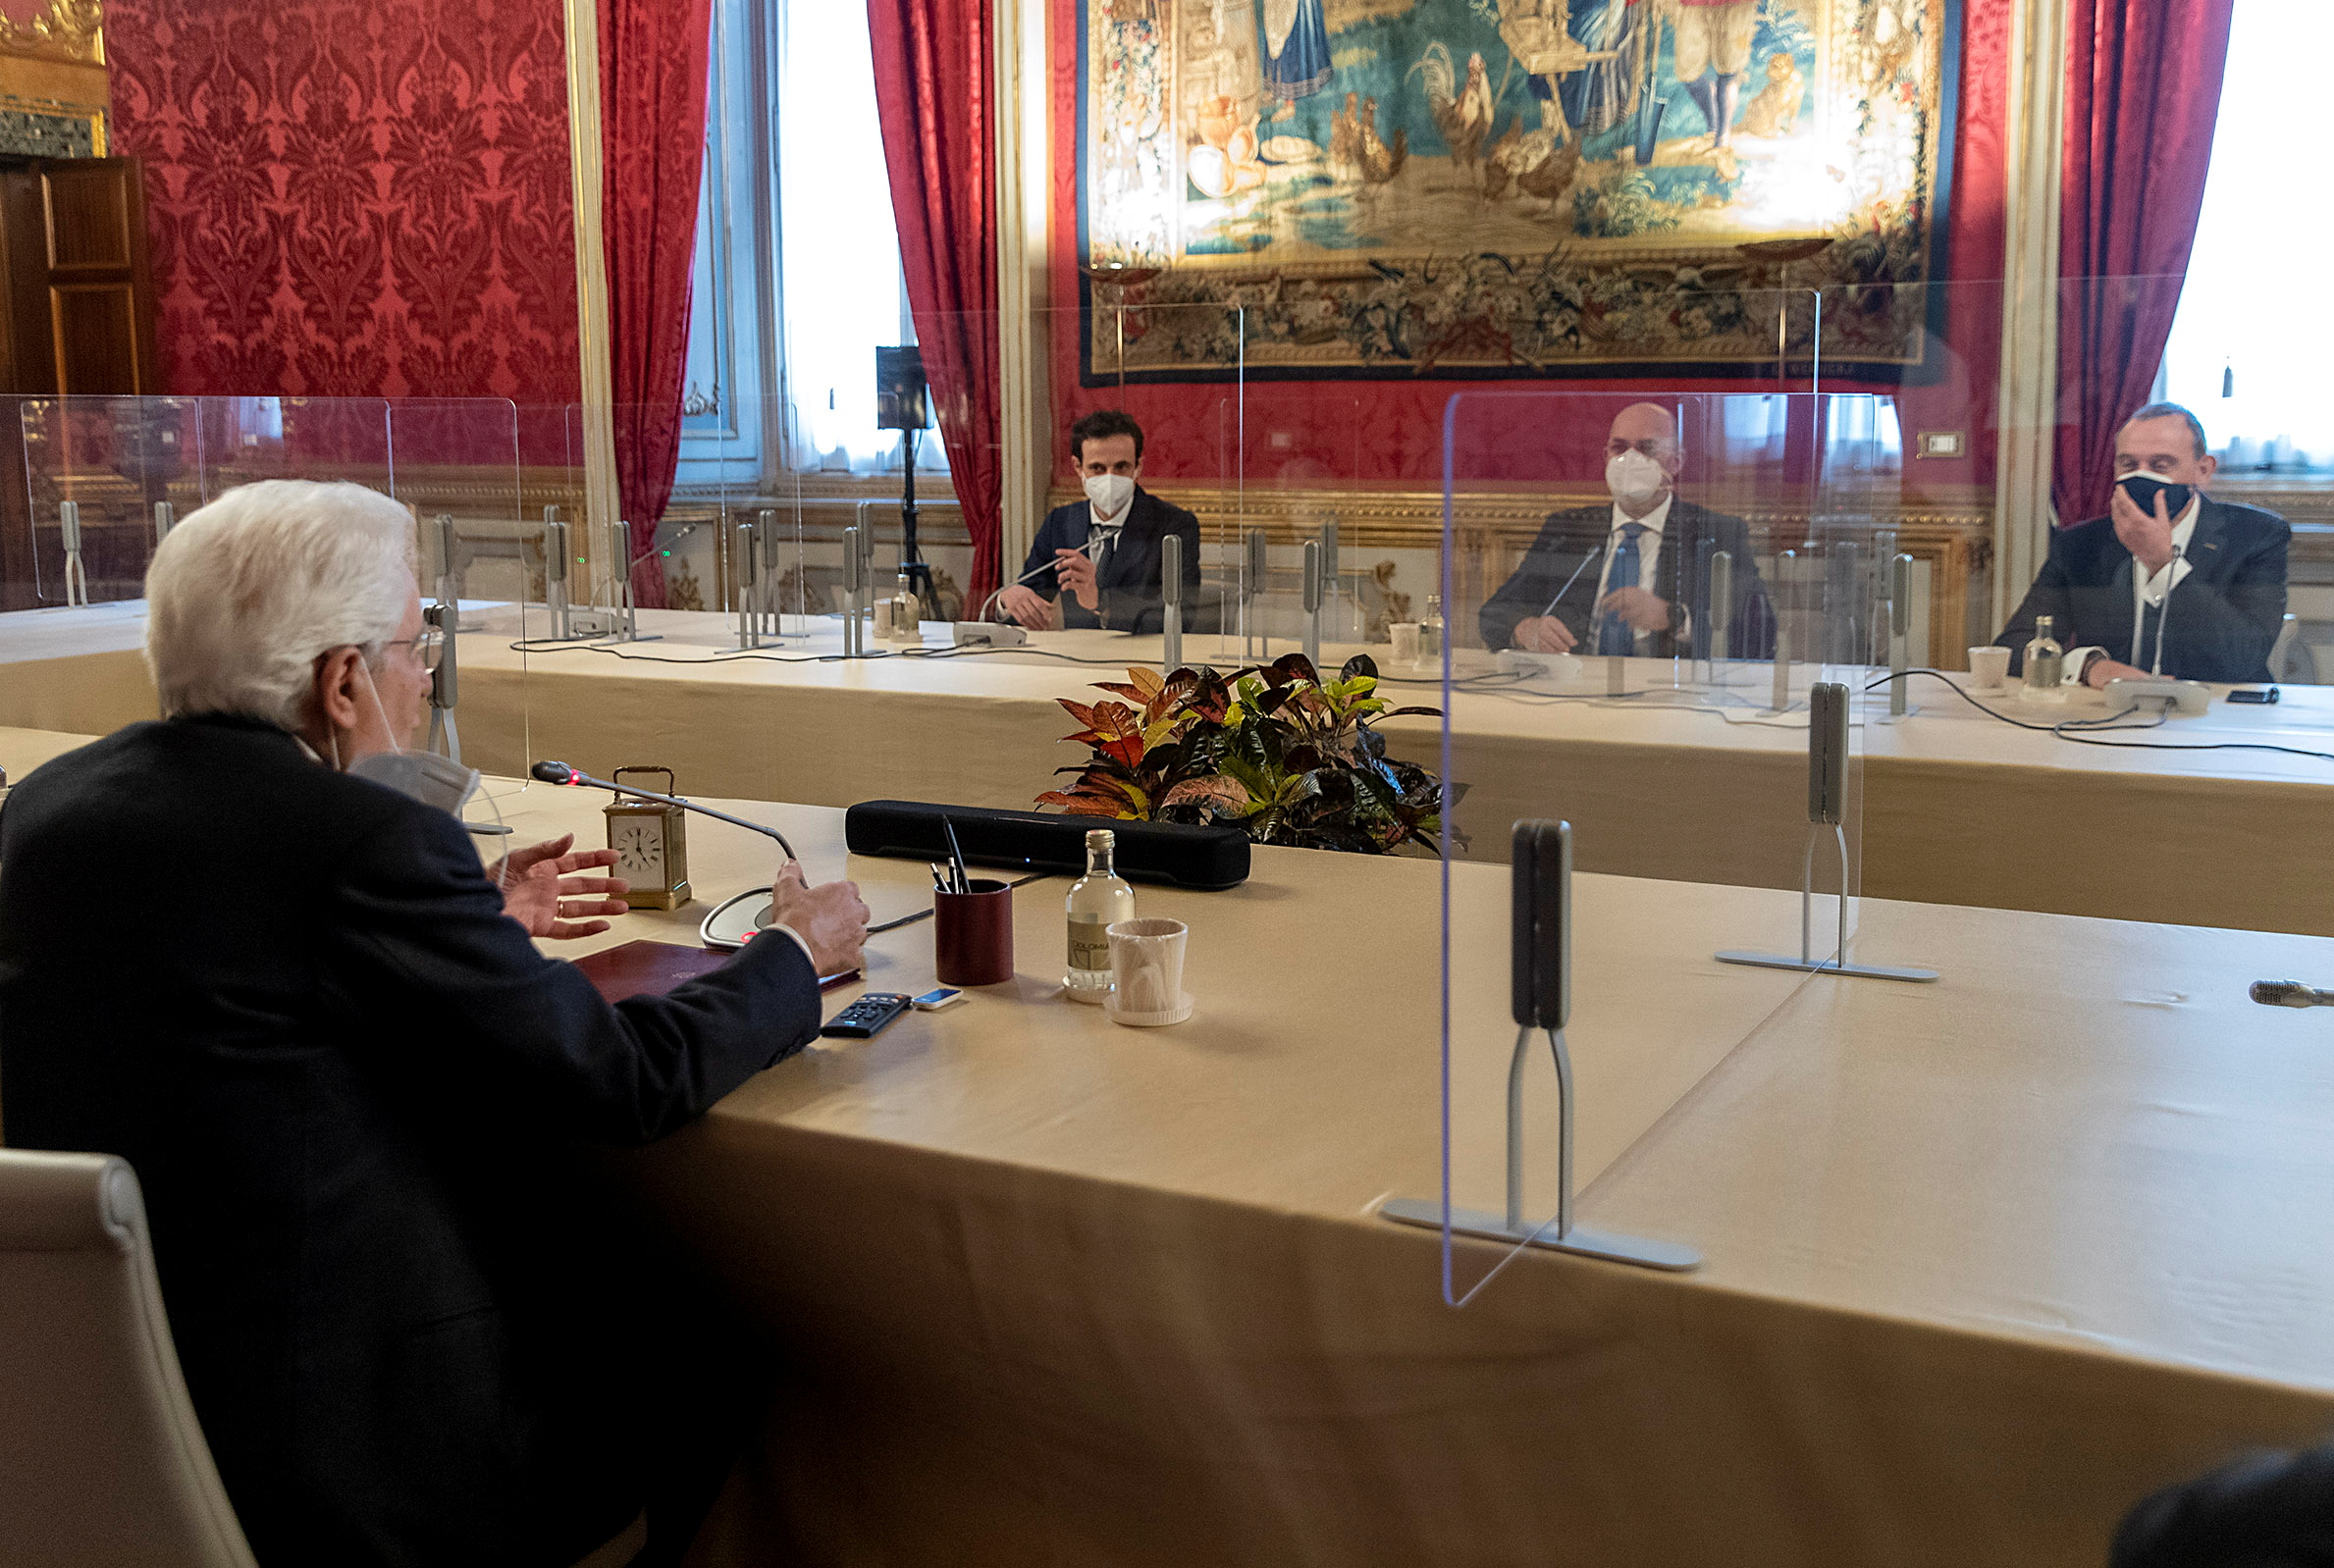 El presidente (jefe de Estado) italiano, Sergio Matarella, en una de las reuniones con las que busca formar el nuevo gobierno italiano tras la renuncia del exjefe de gobierno, Giuseppe Conte 
REUTERS 